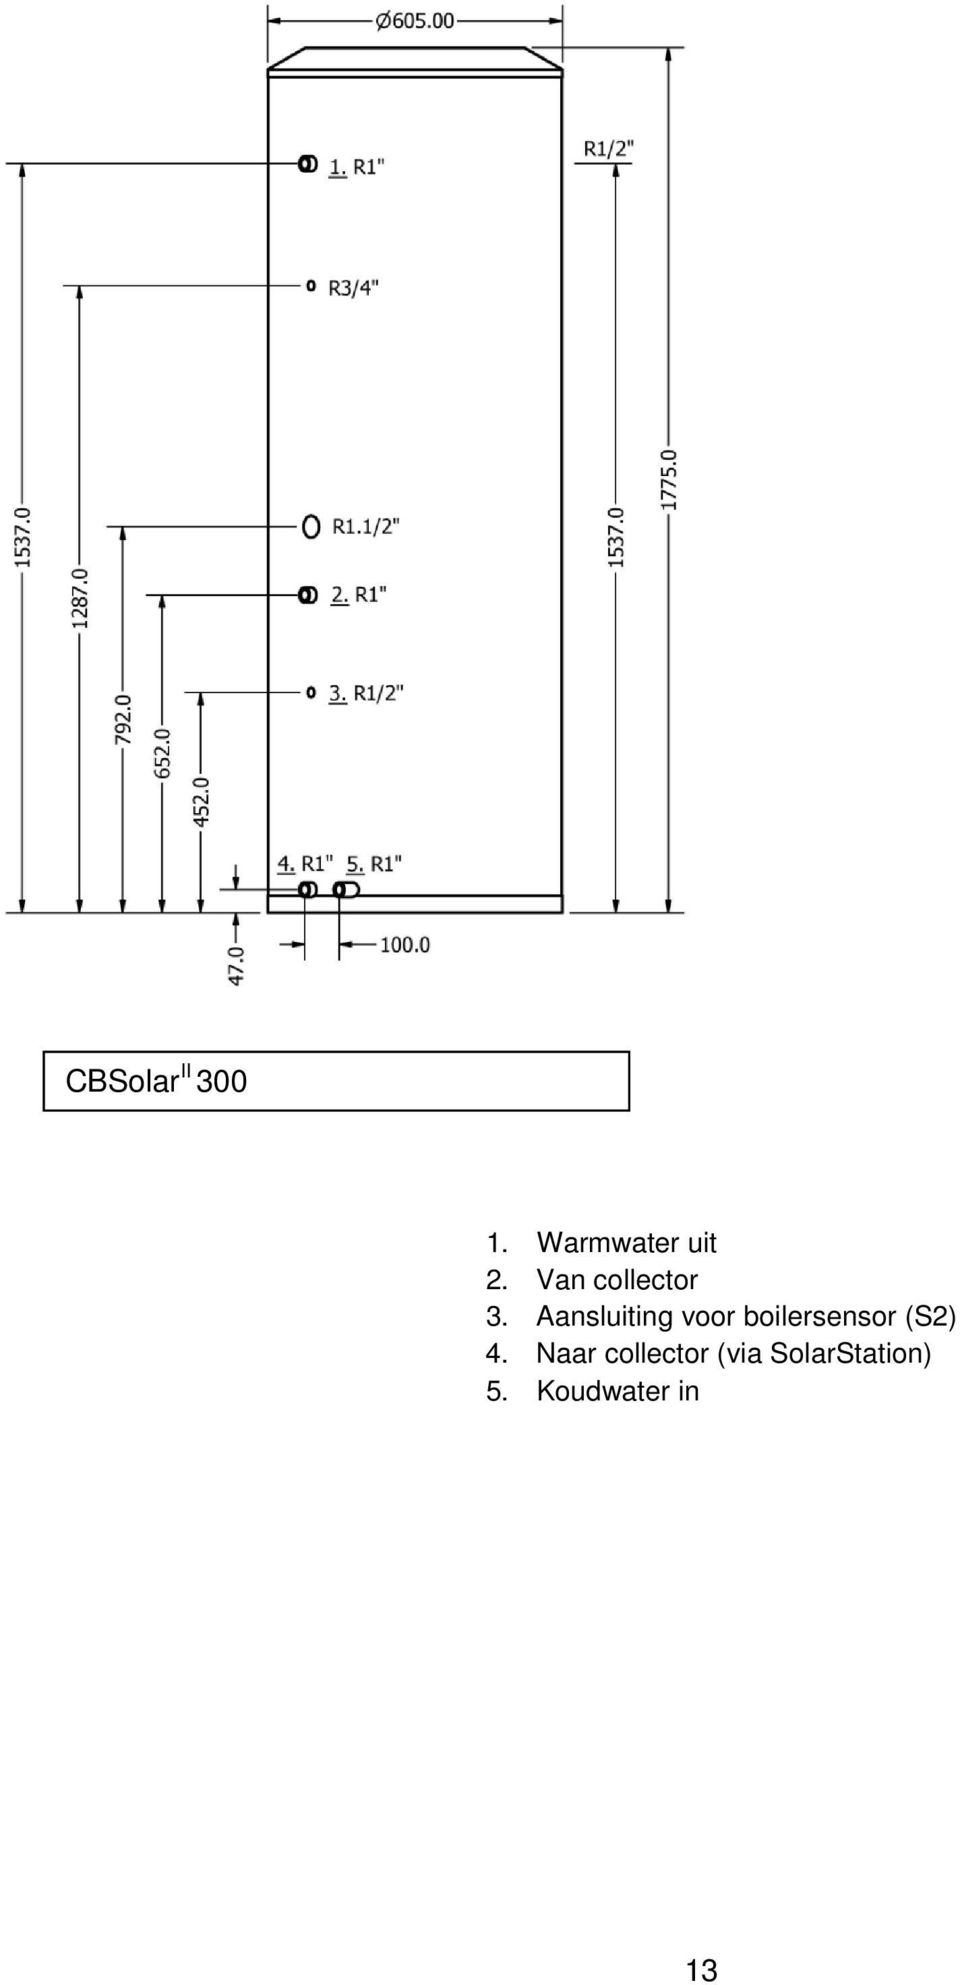 Aansluiting voor boilersensor (S2)